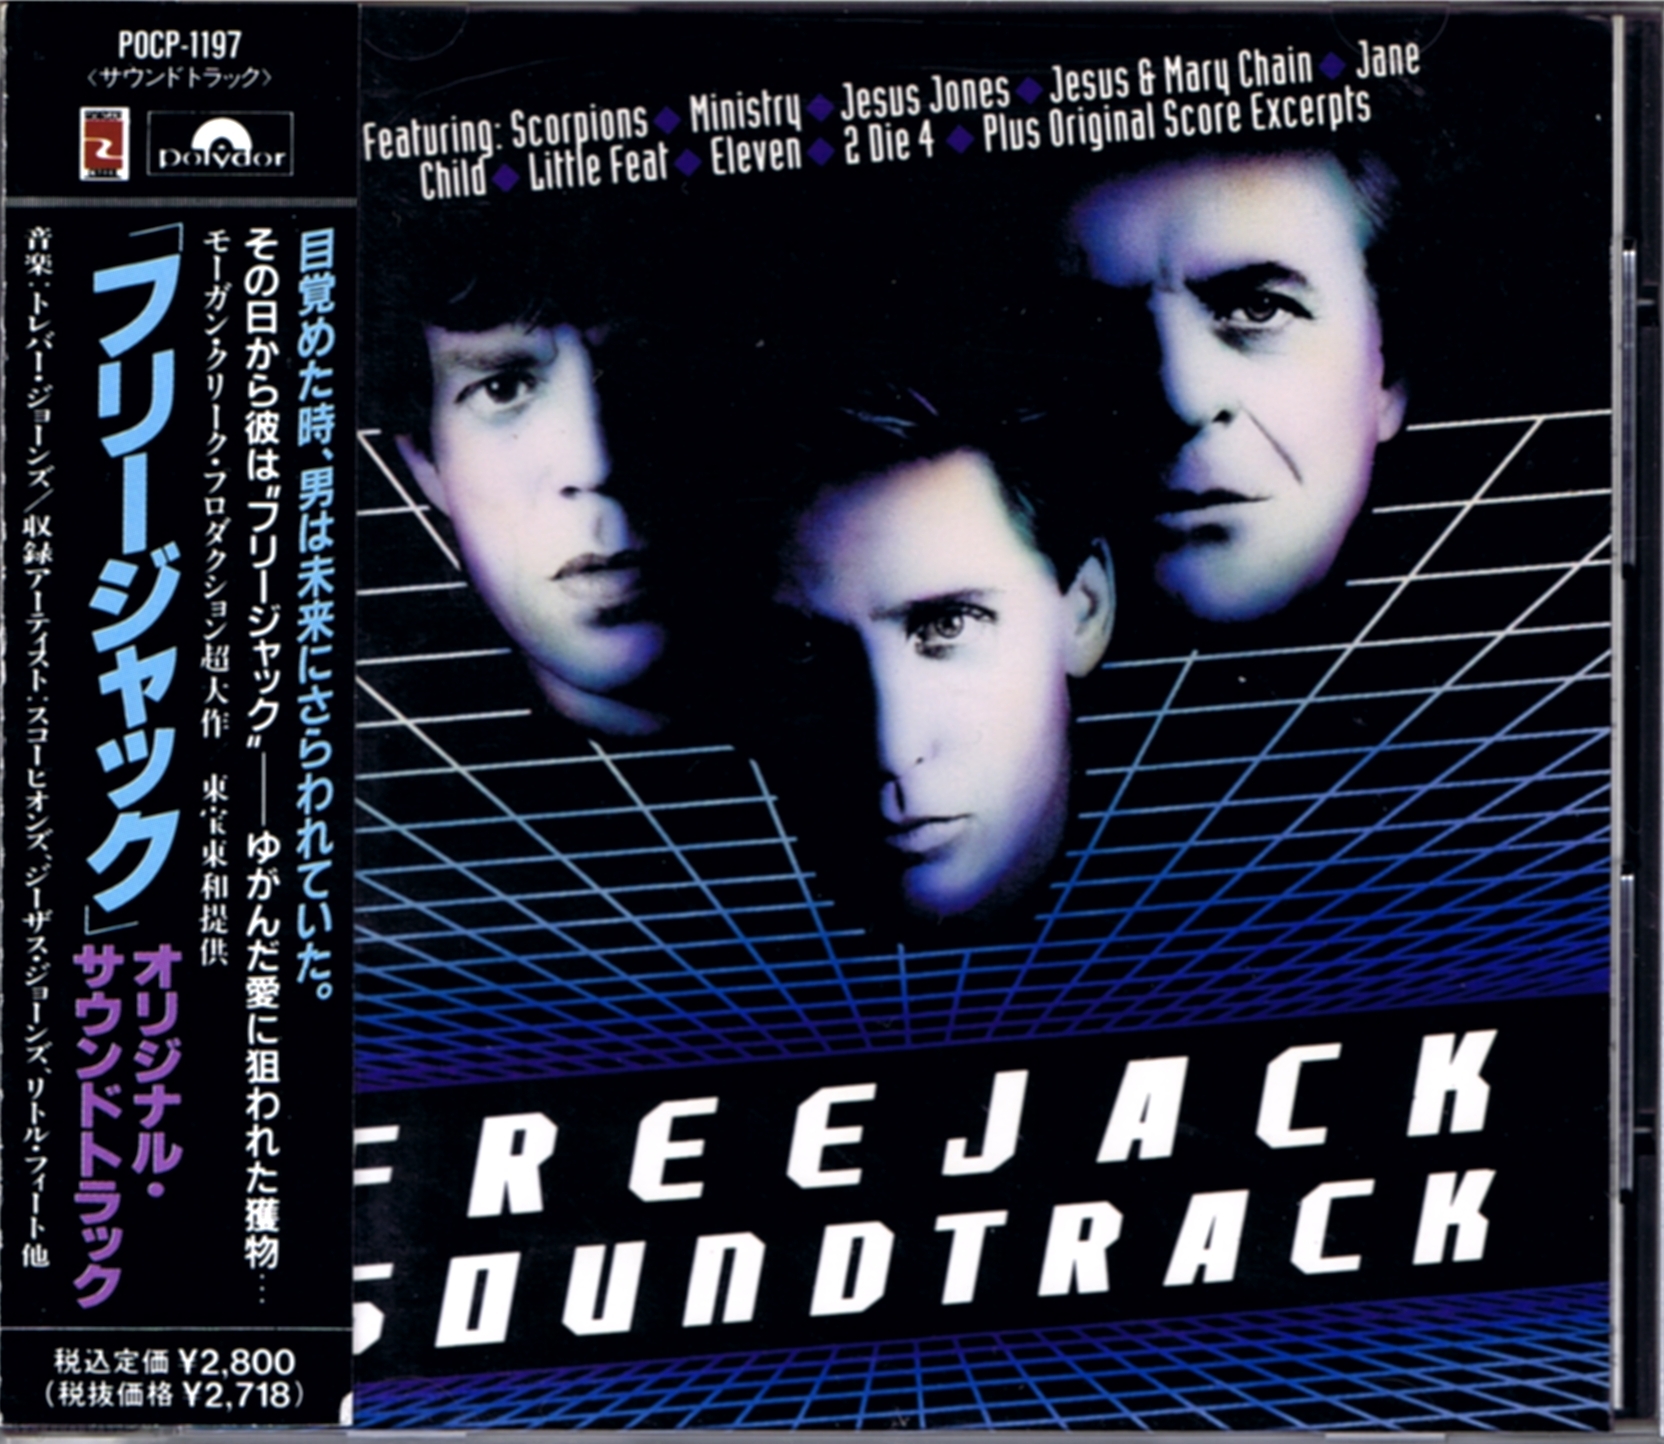 中古 Freejack フリージャック 日本盤サウンドトラック Cd 帯付き Beeflatmusic